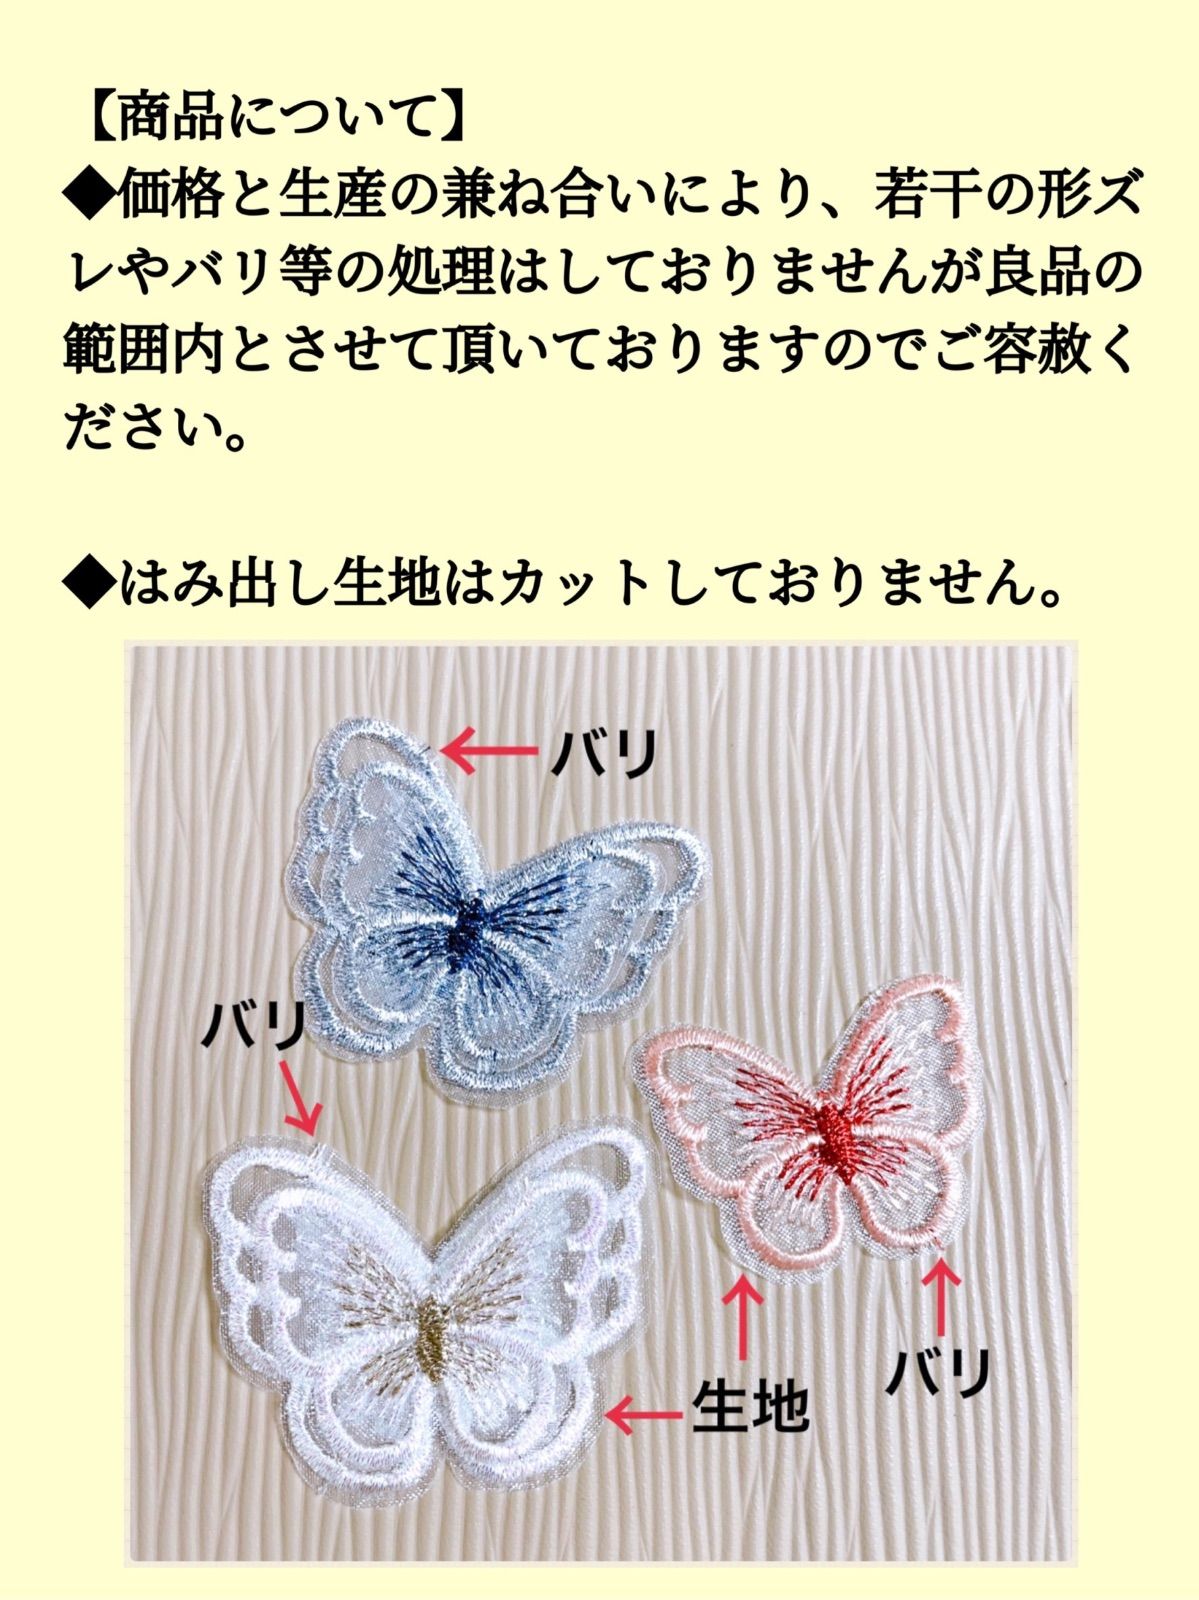 蝶モチーフケミカルレース 二枚羽 12個入り 全12色 ハンドメイド 